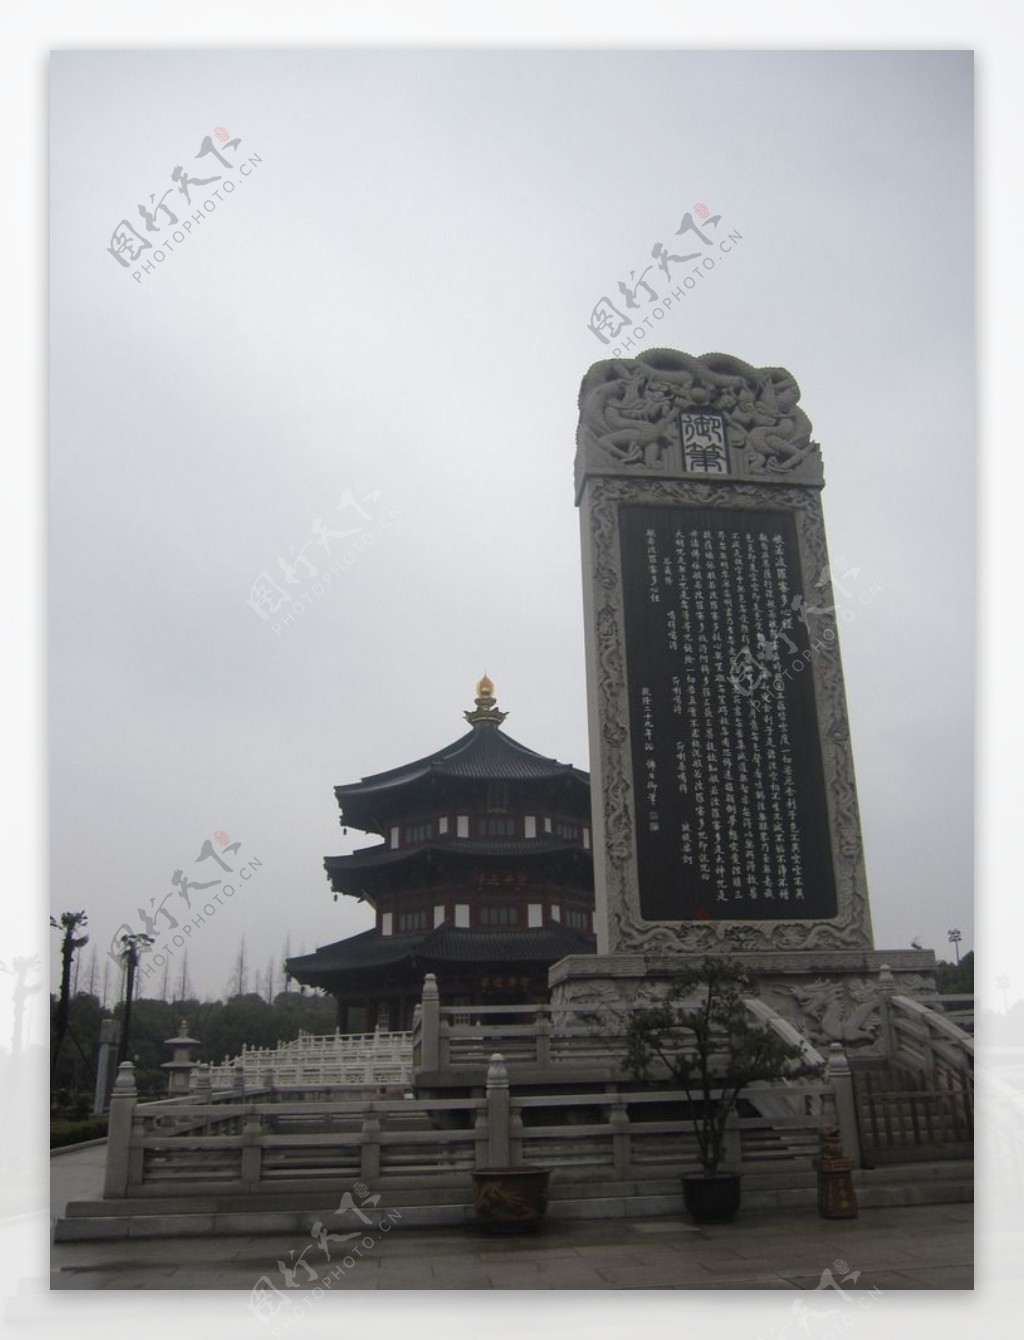 唐诗“姑苏城外寒山寺”，让如今的这座寺院变成了苏州著名景点 - 知乎